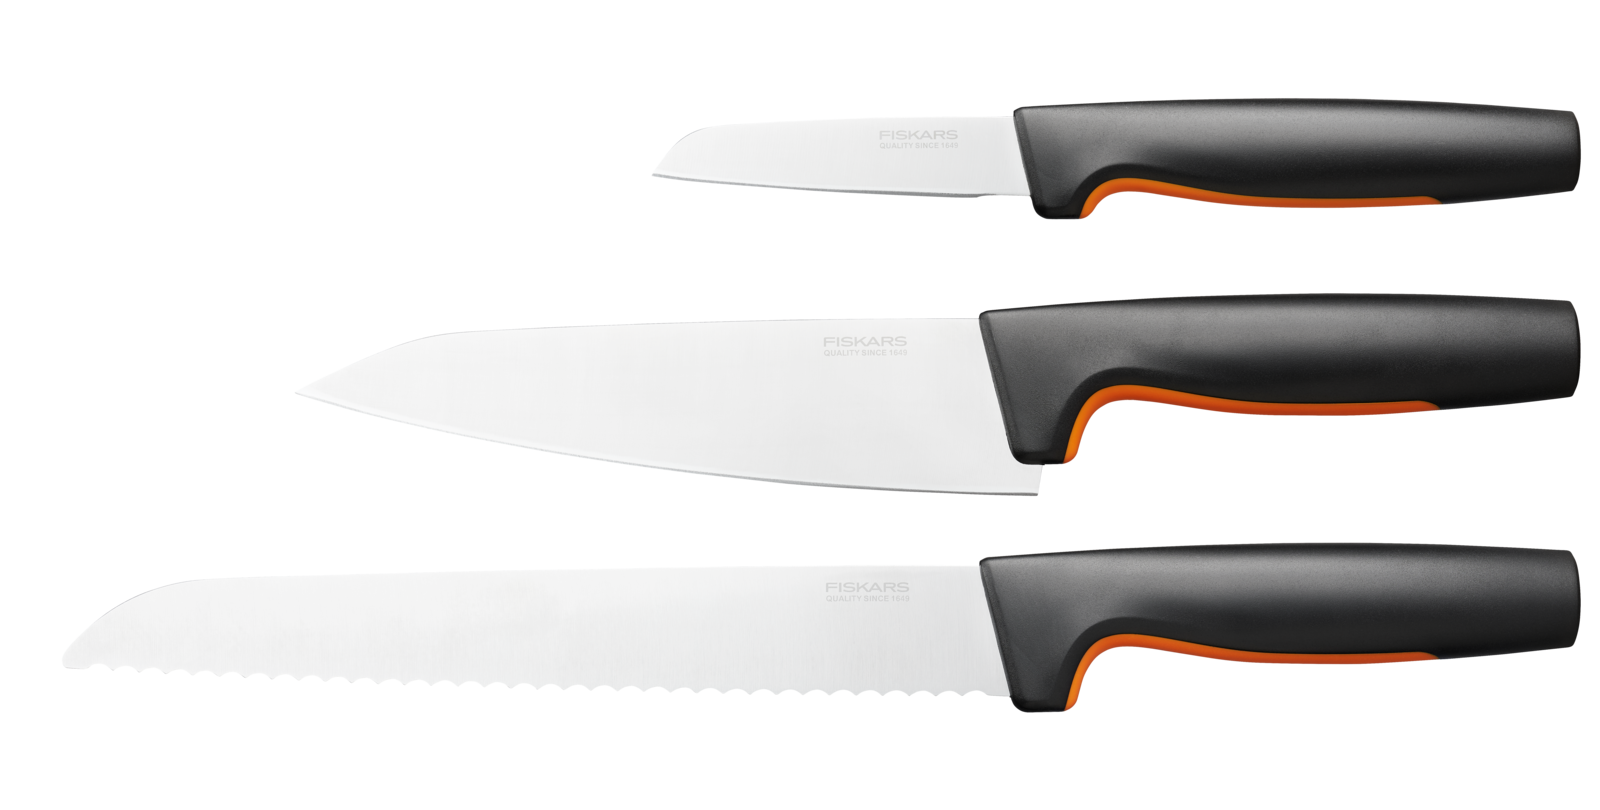 Sada nožů Fiskars, 3 ks - 1057559